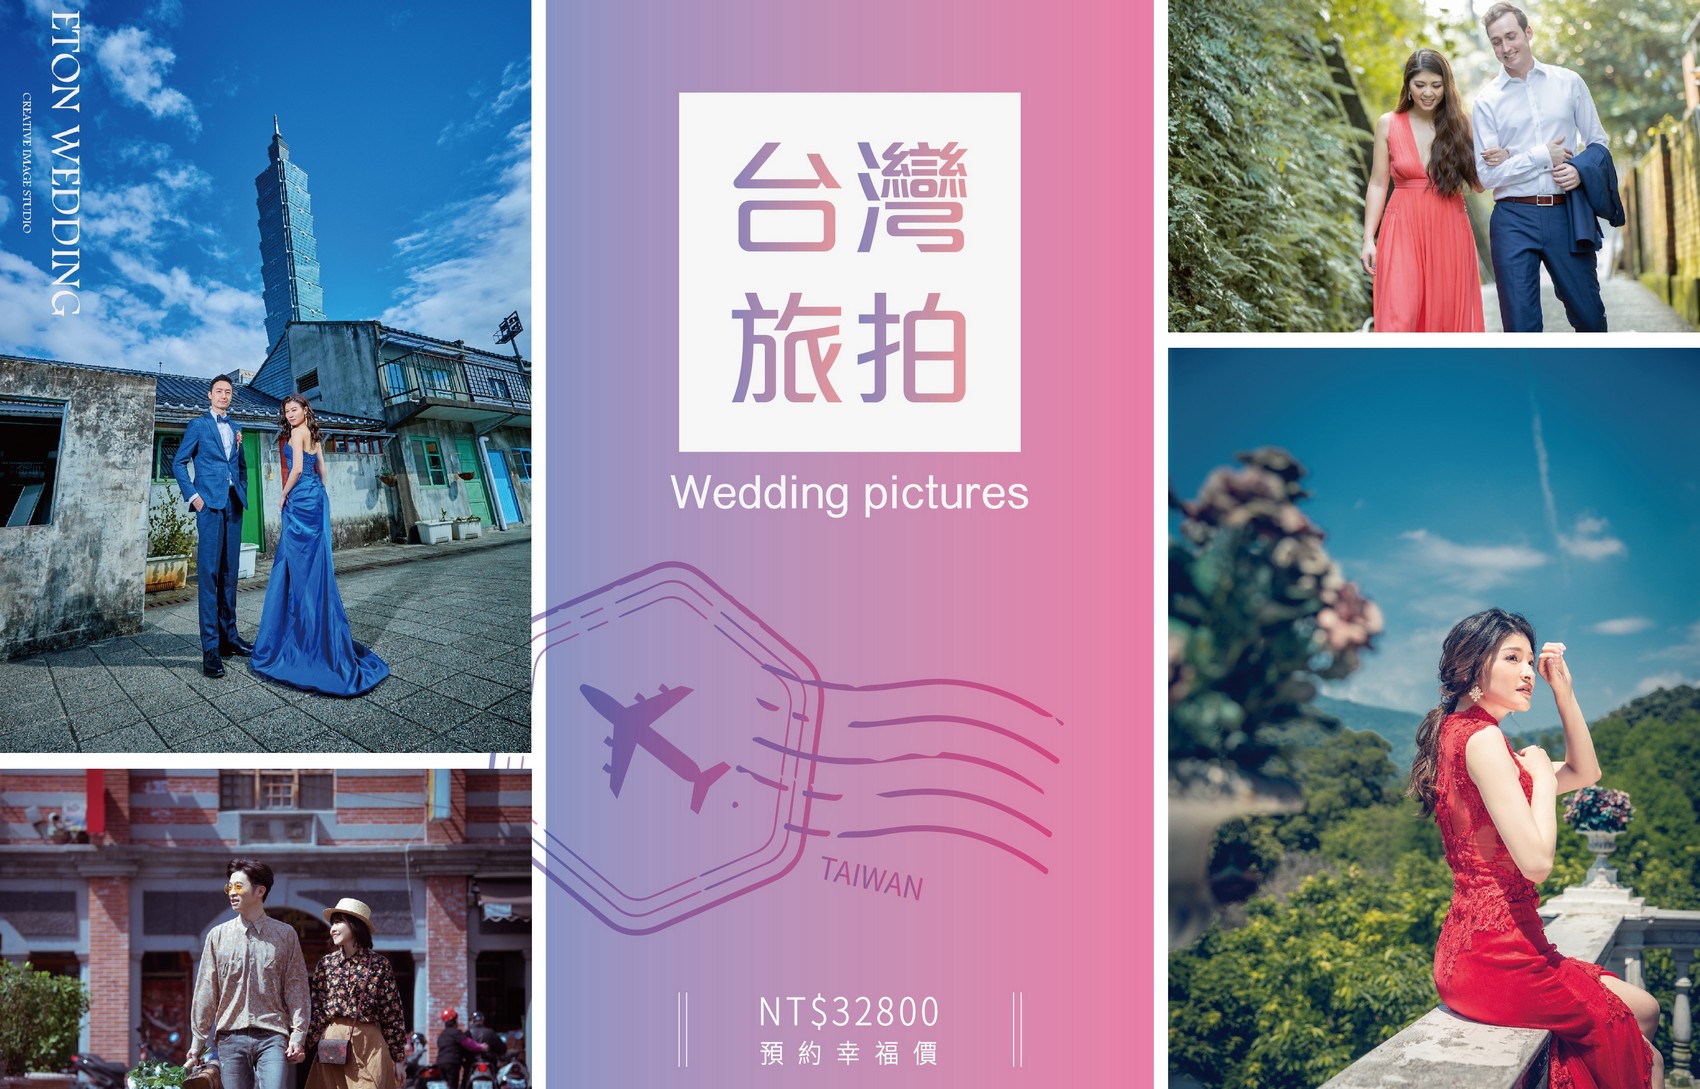 台灣 婚紗工作室,台灣 婚紗攝影價格,台東拍婚紗,台東 婚紗攝影,台東 婚紗工作室